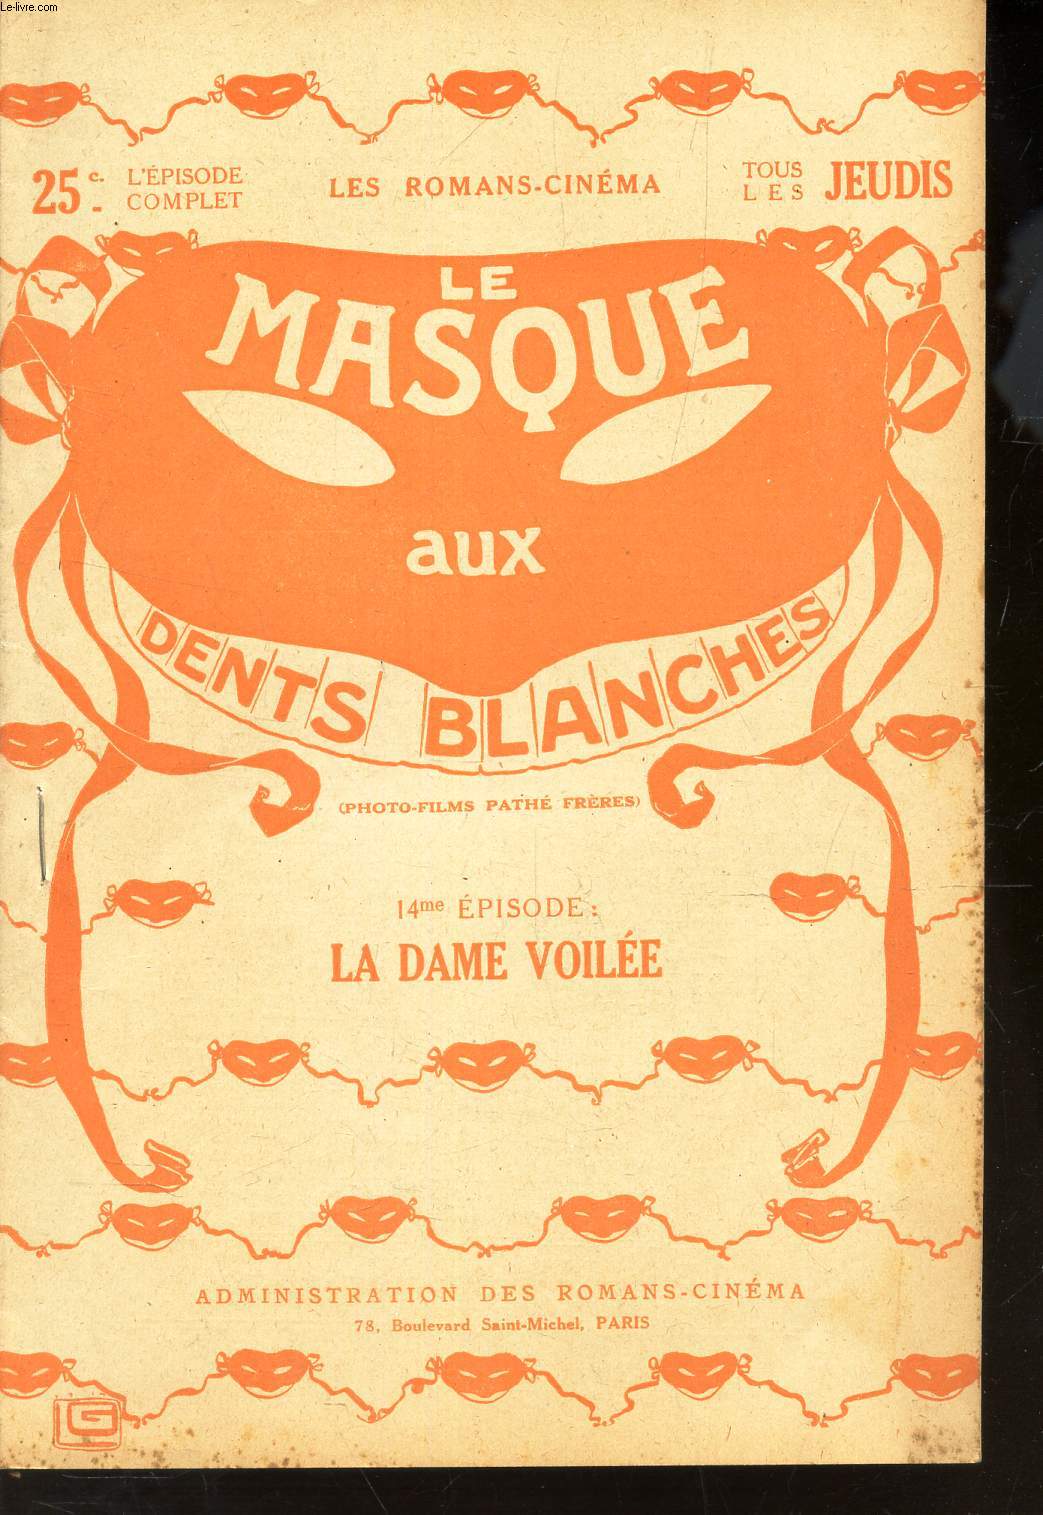 LE MASQUE AUX DENTS BLANCHES / 14eme EPISODE :LA DAME VOILEE.